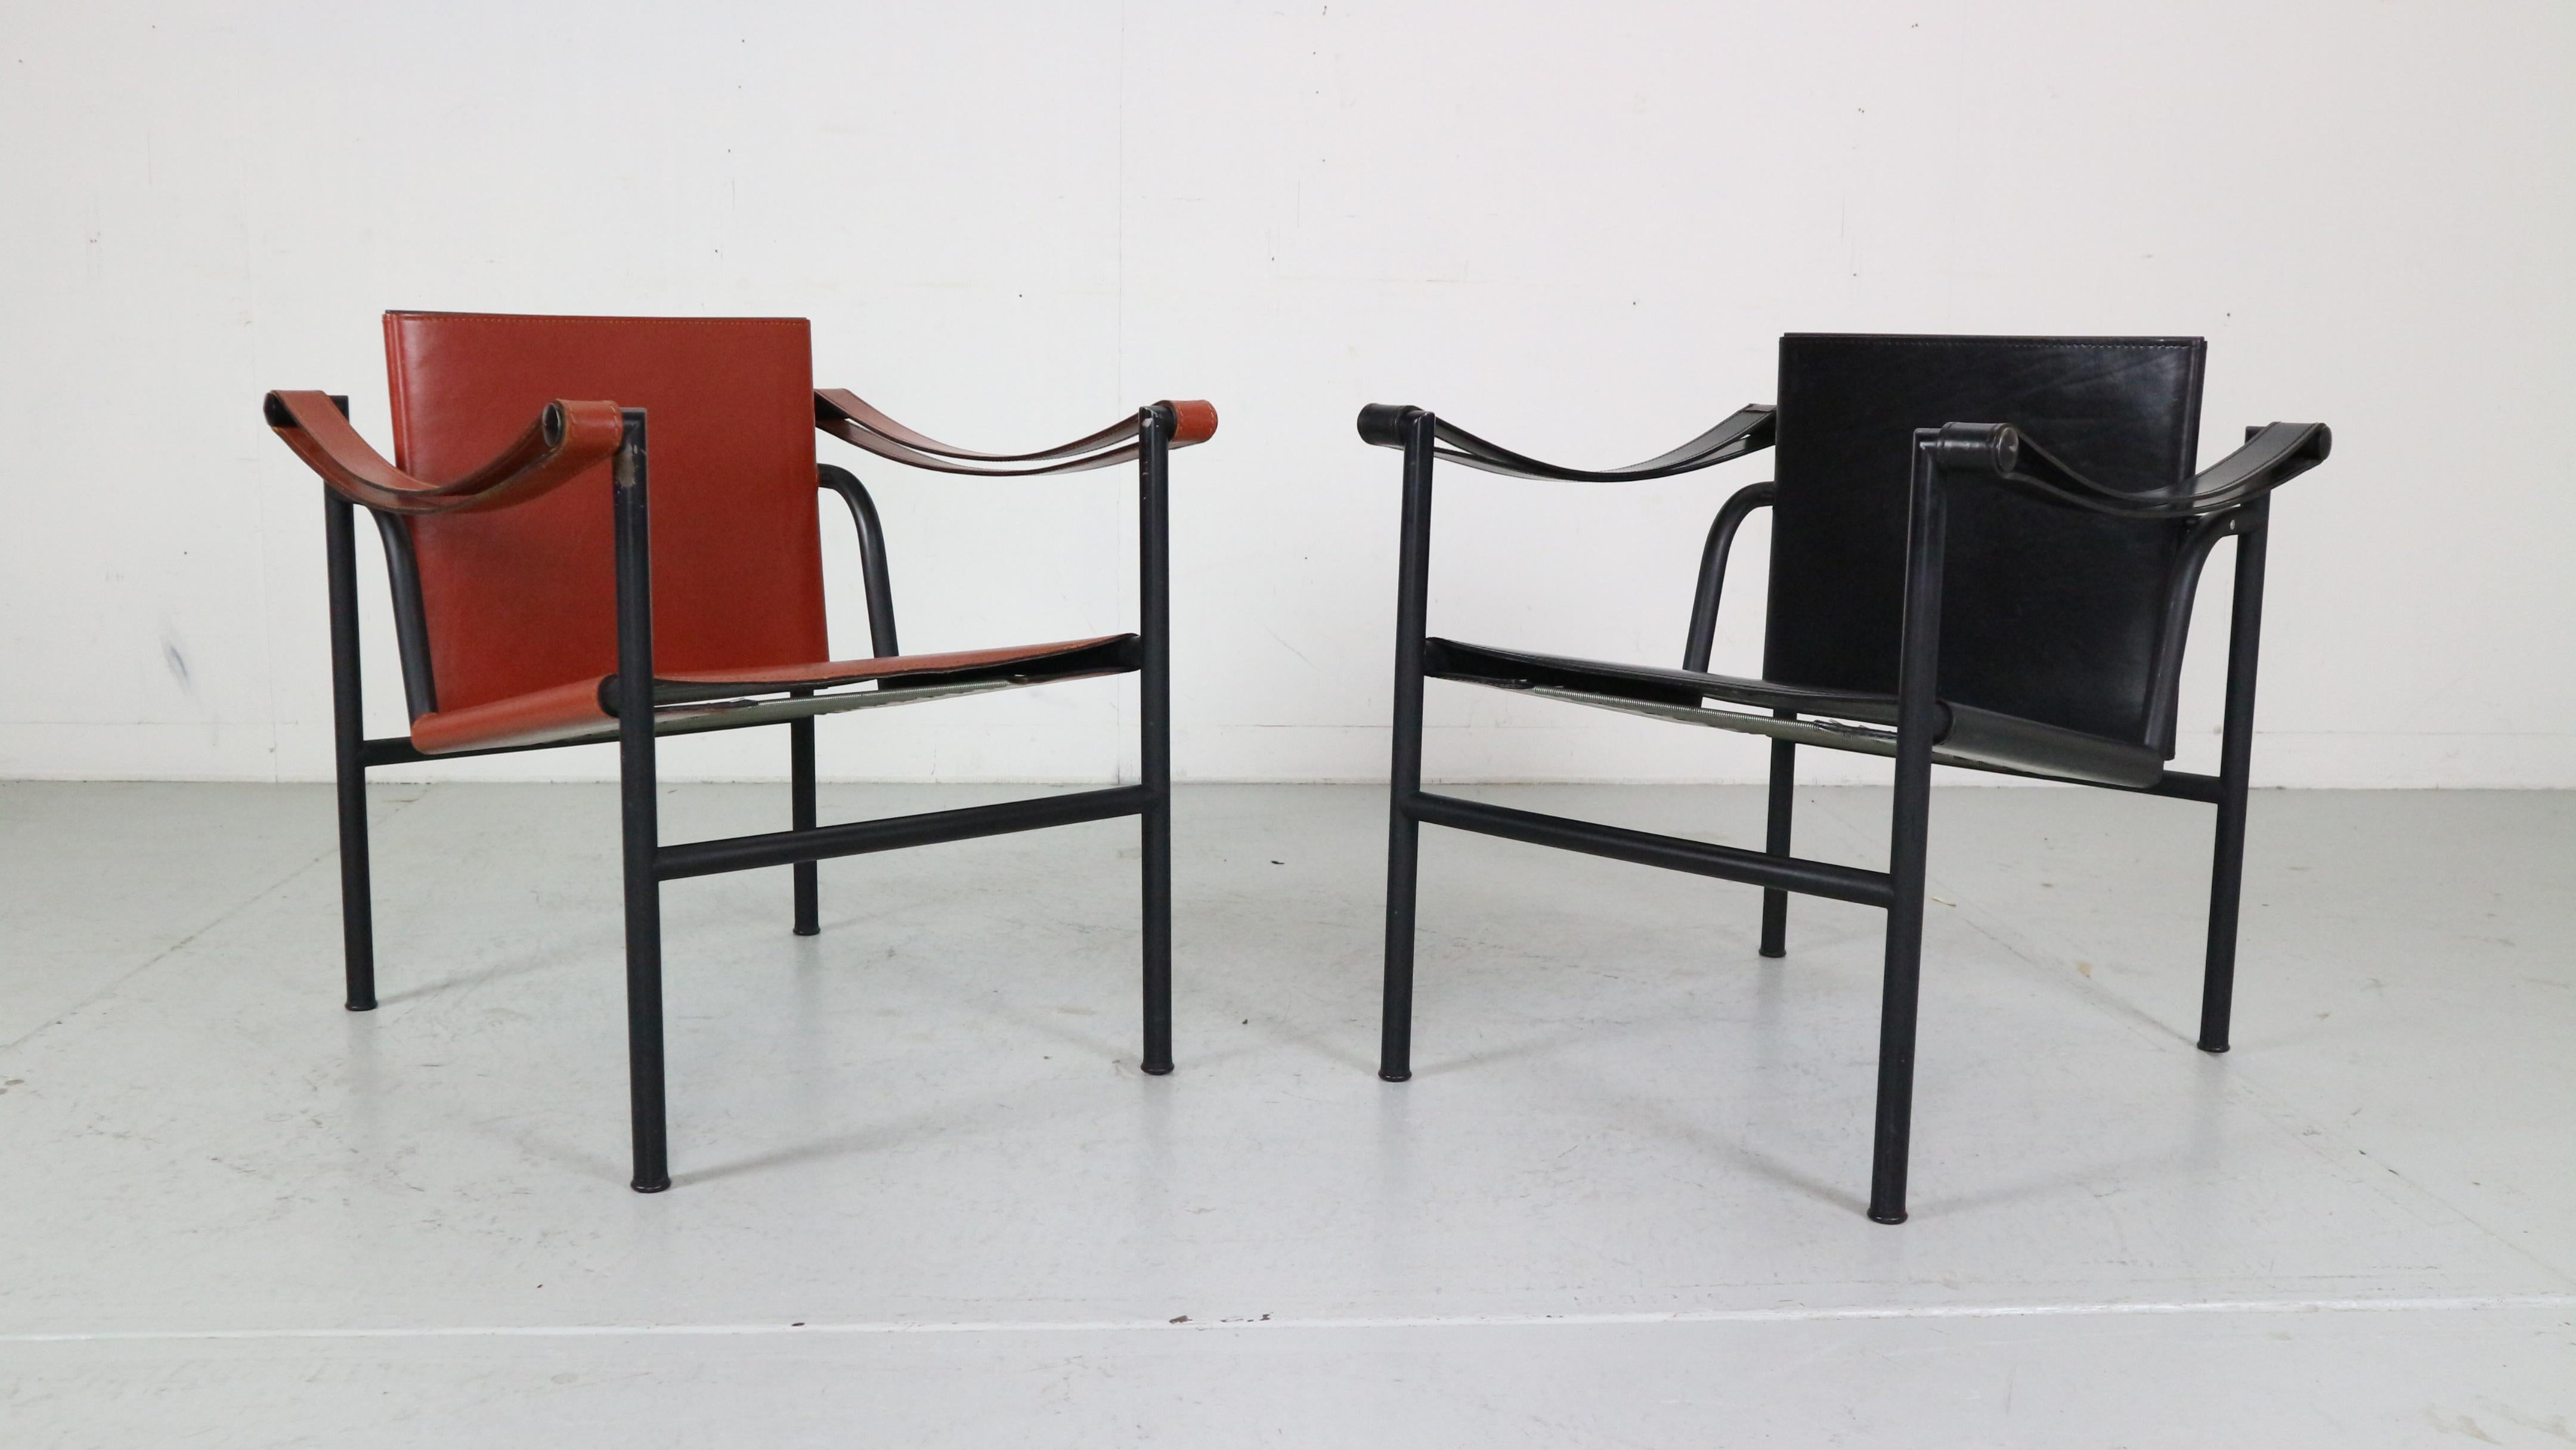 Satz von 2 Sesseln, entworfen von Le Corbusier und hergestellt für Cassina, berühmte italienische Möbelmanufaktur in den 1970er Jahren.

Beide Stühle sind original signiert, niedrige Nummer frühen Ausgabe und kommt mit Dokumentation.
Modellnummer -